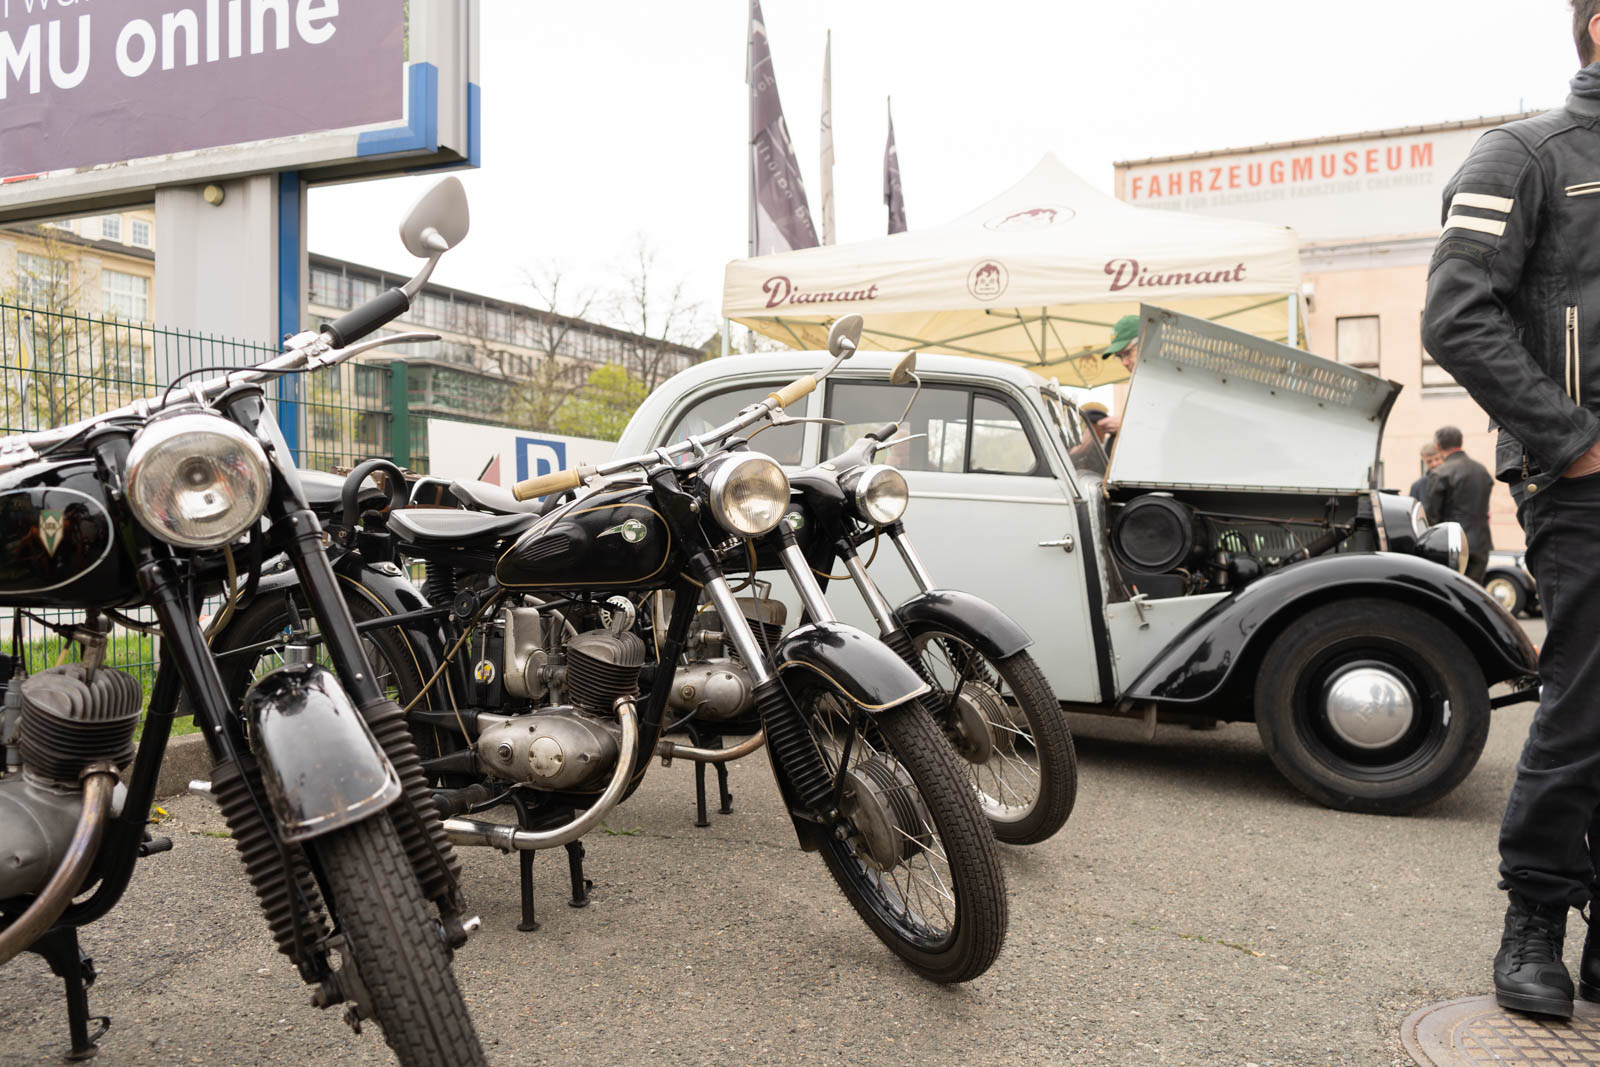 DKW-Automobil und Motorräder auf dem Parkplatz